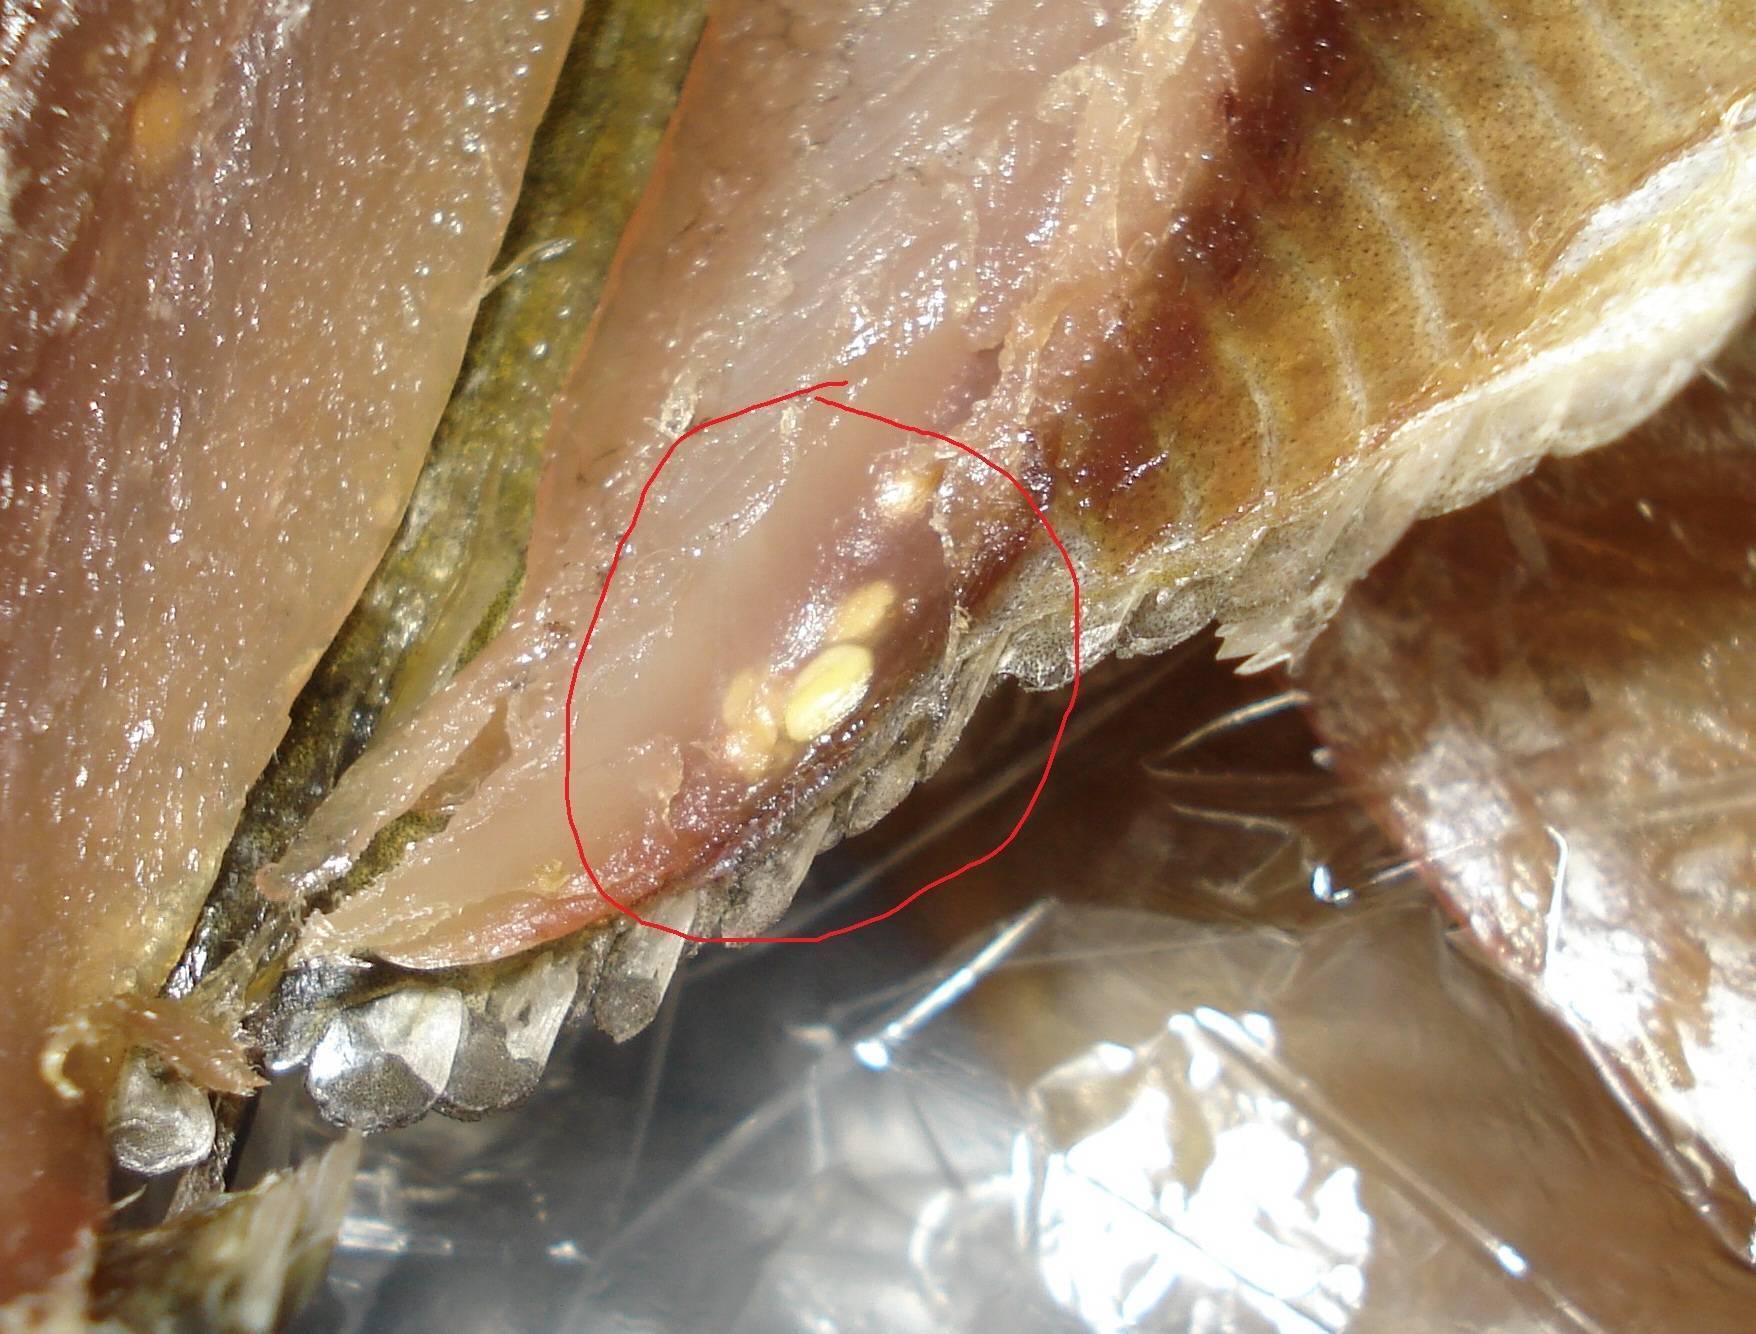 Есть ли описторхоз в щуке — какая рыба заражена?